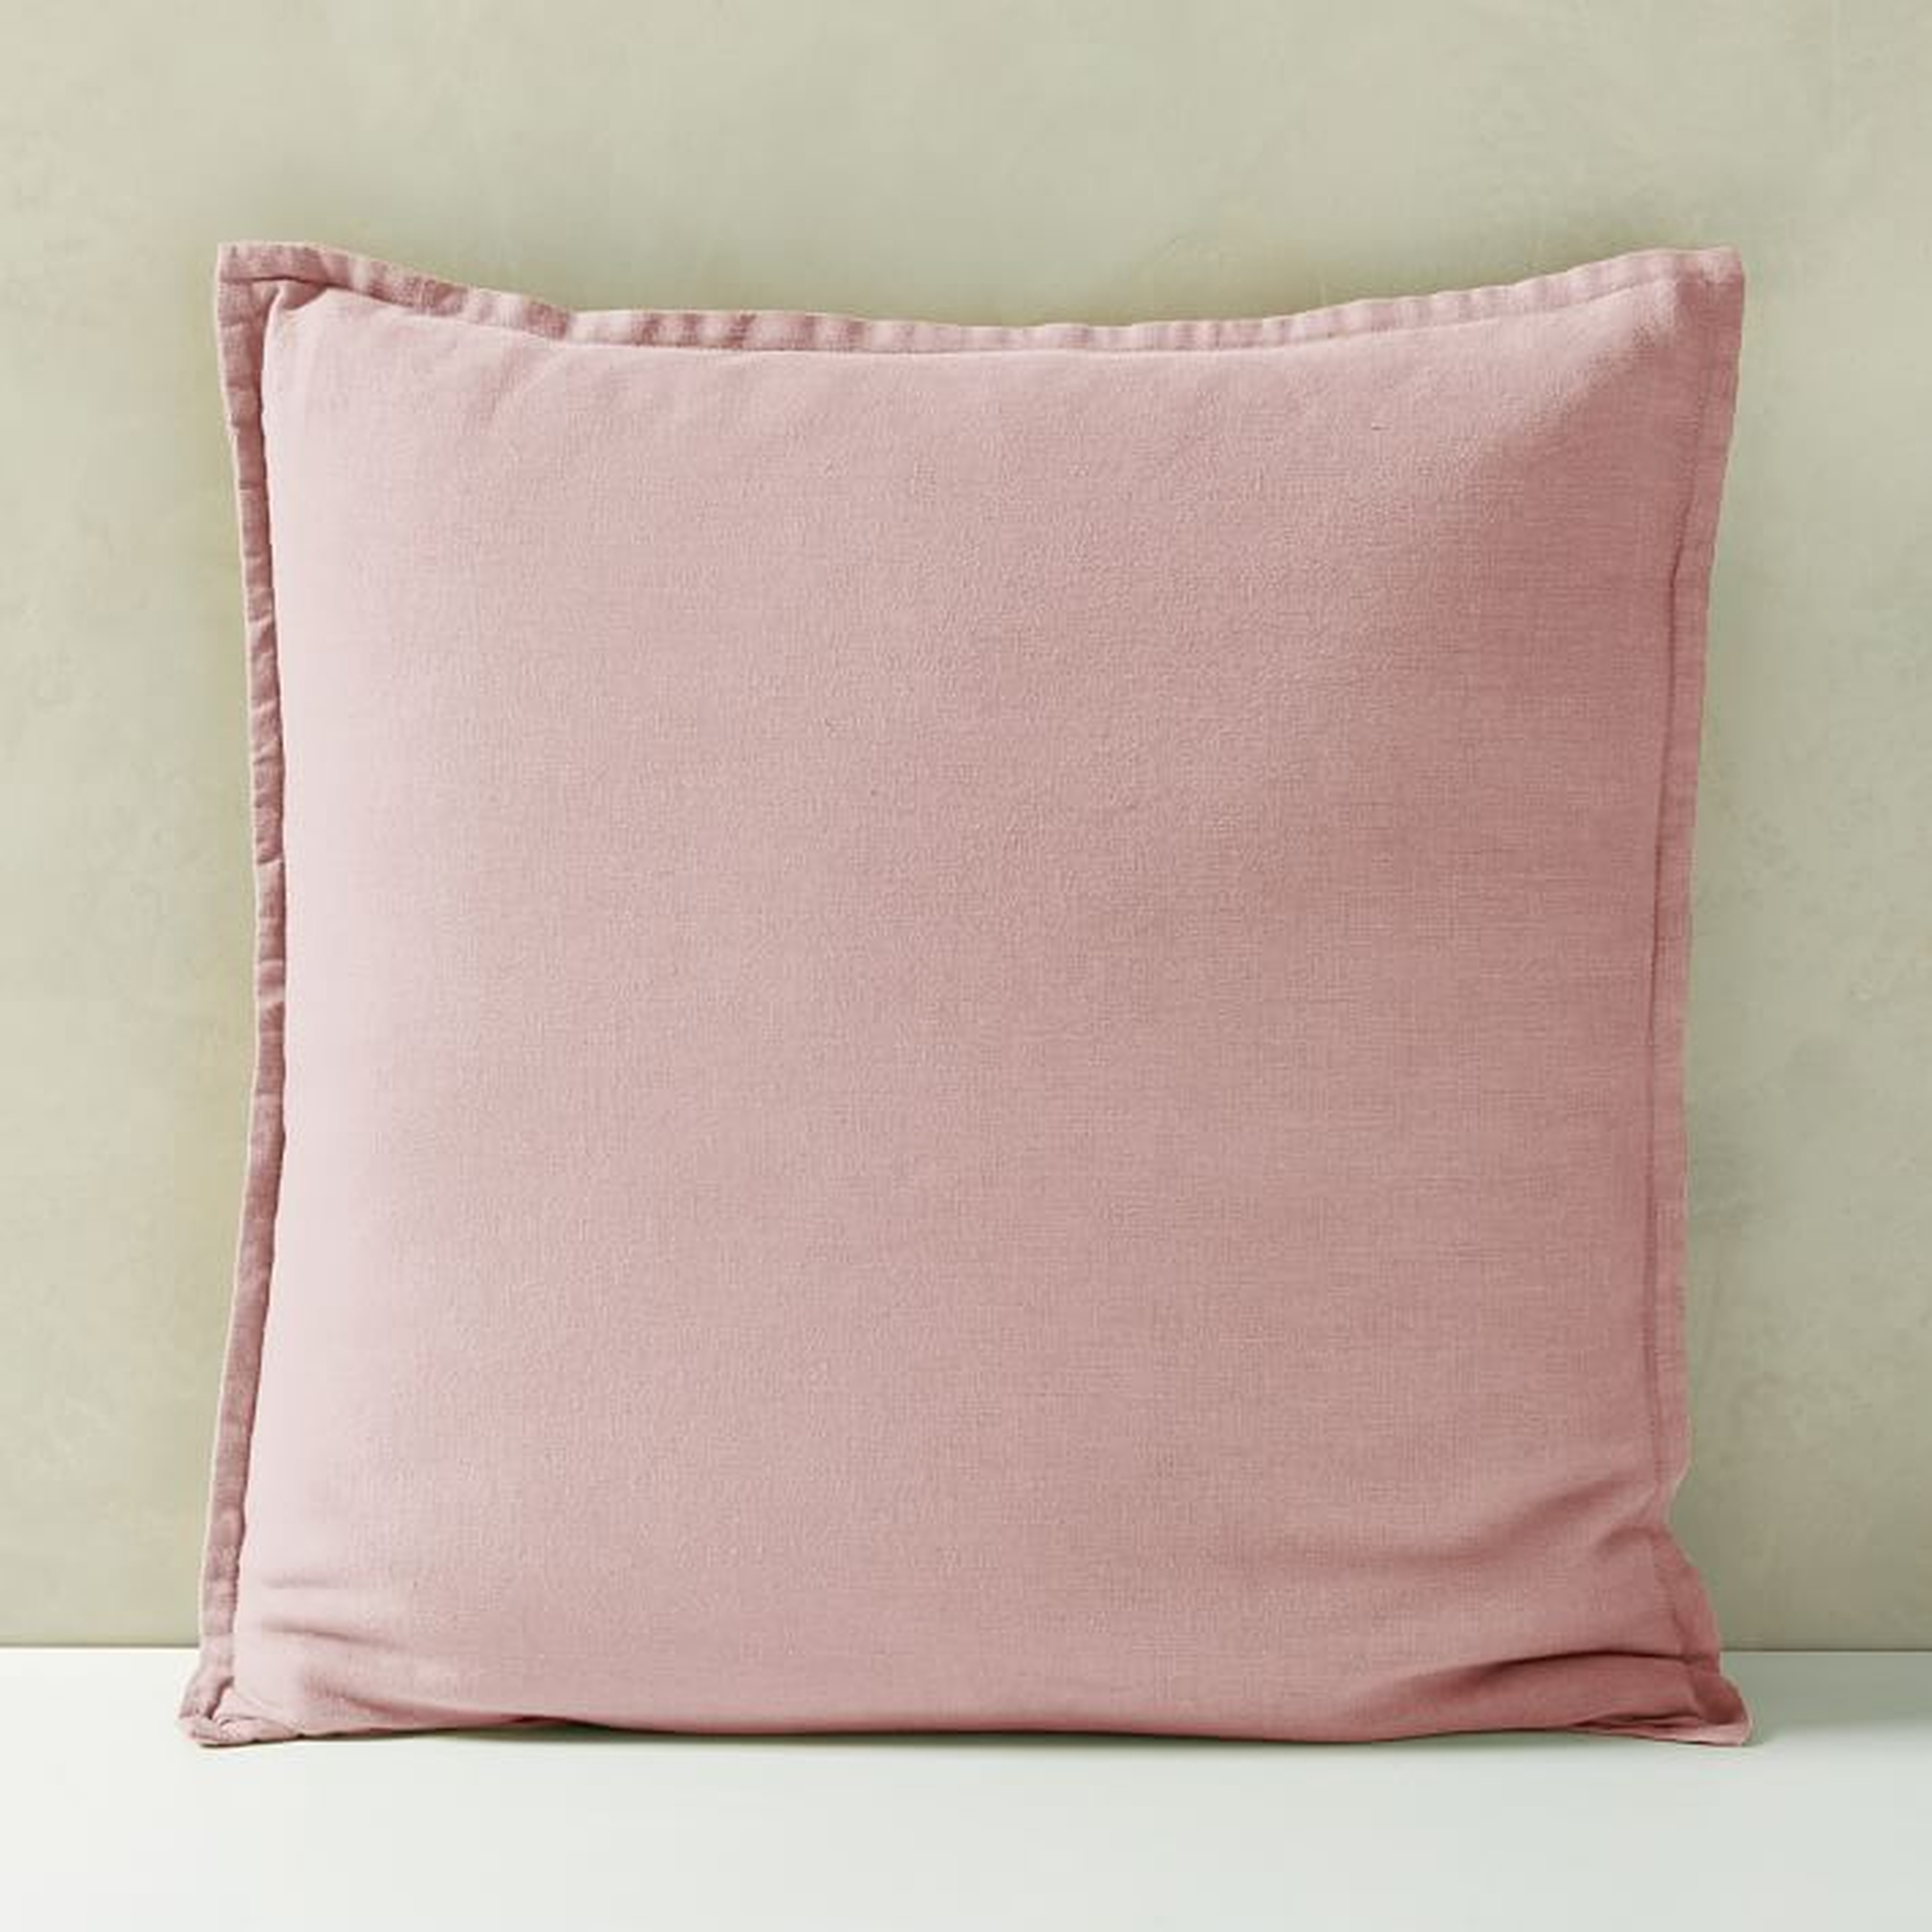 Belgian Flax Linen Pillow Cover, Adobe Rose, 20"x20" - West Elm